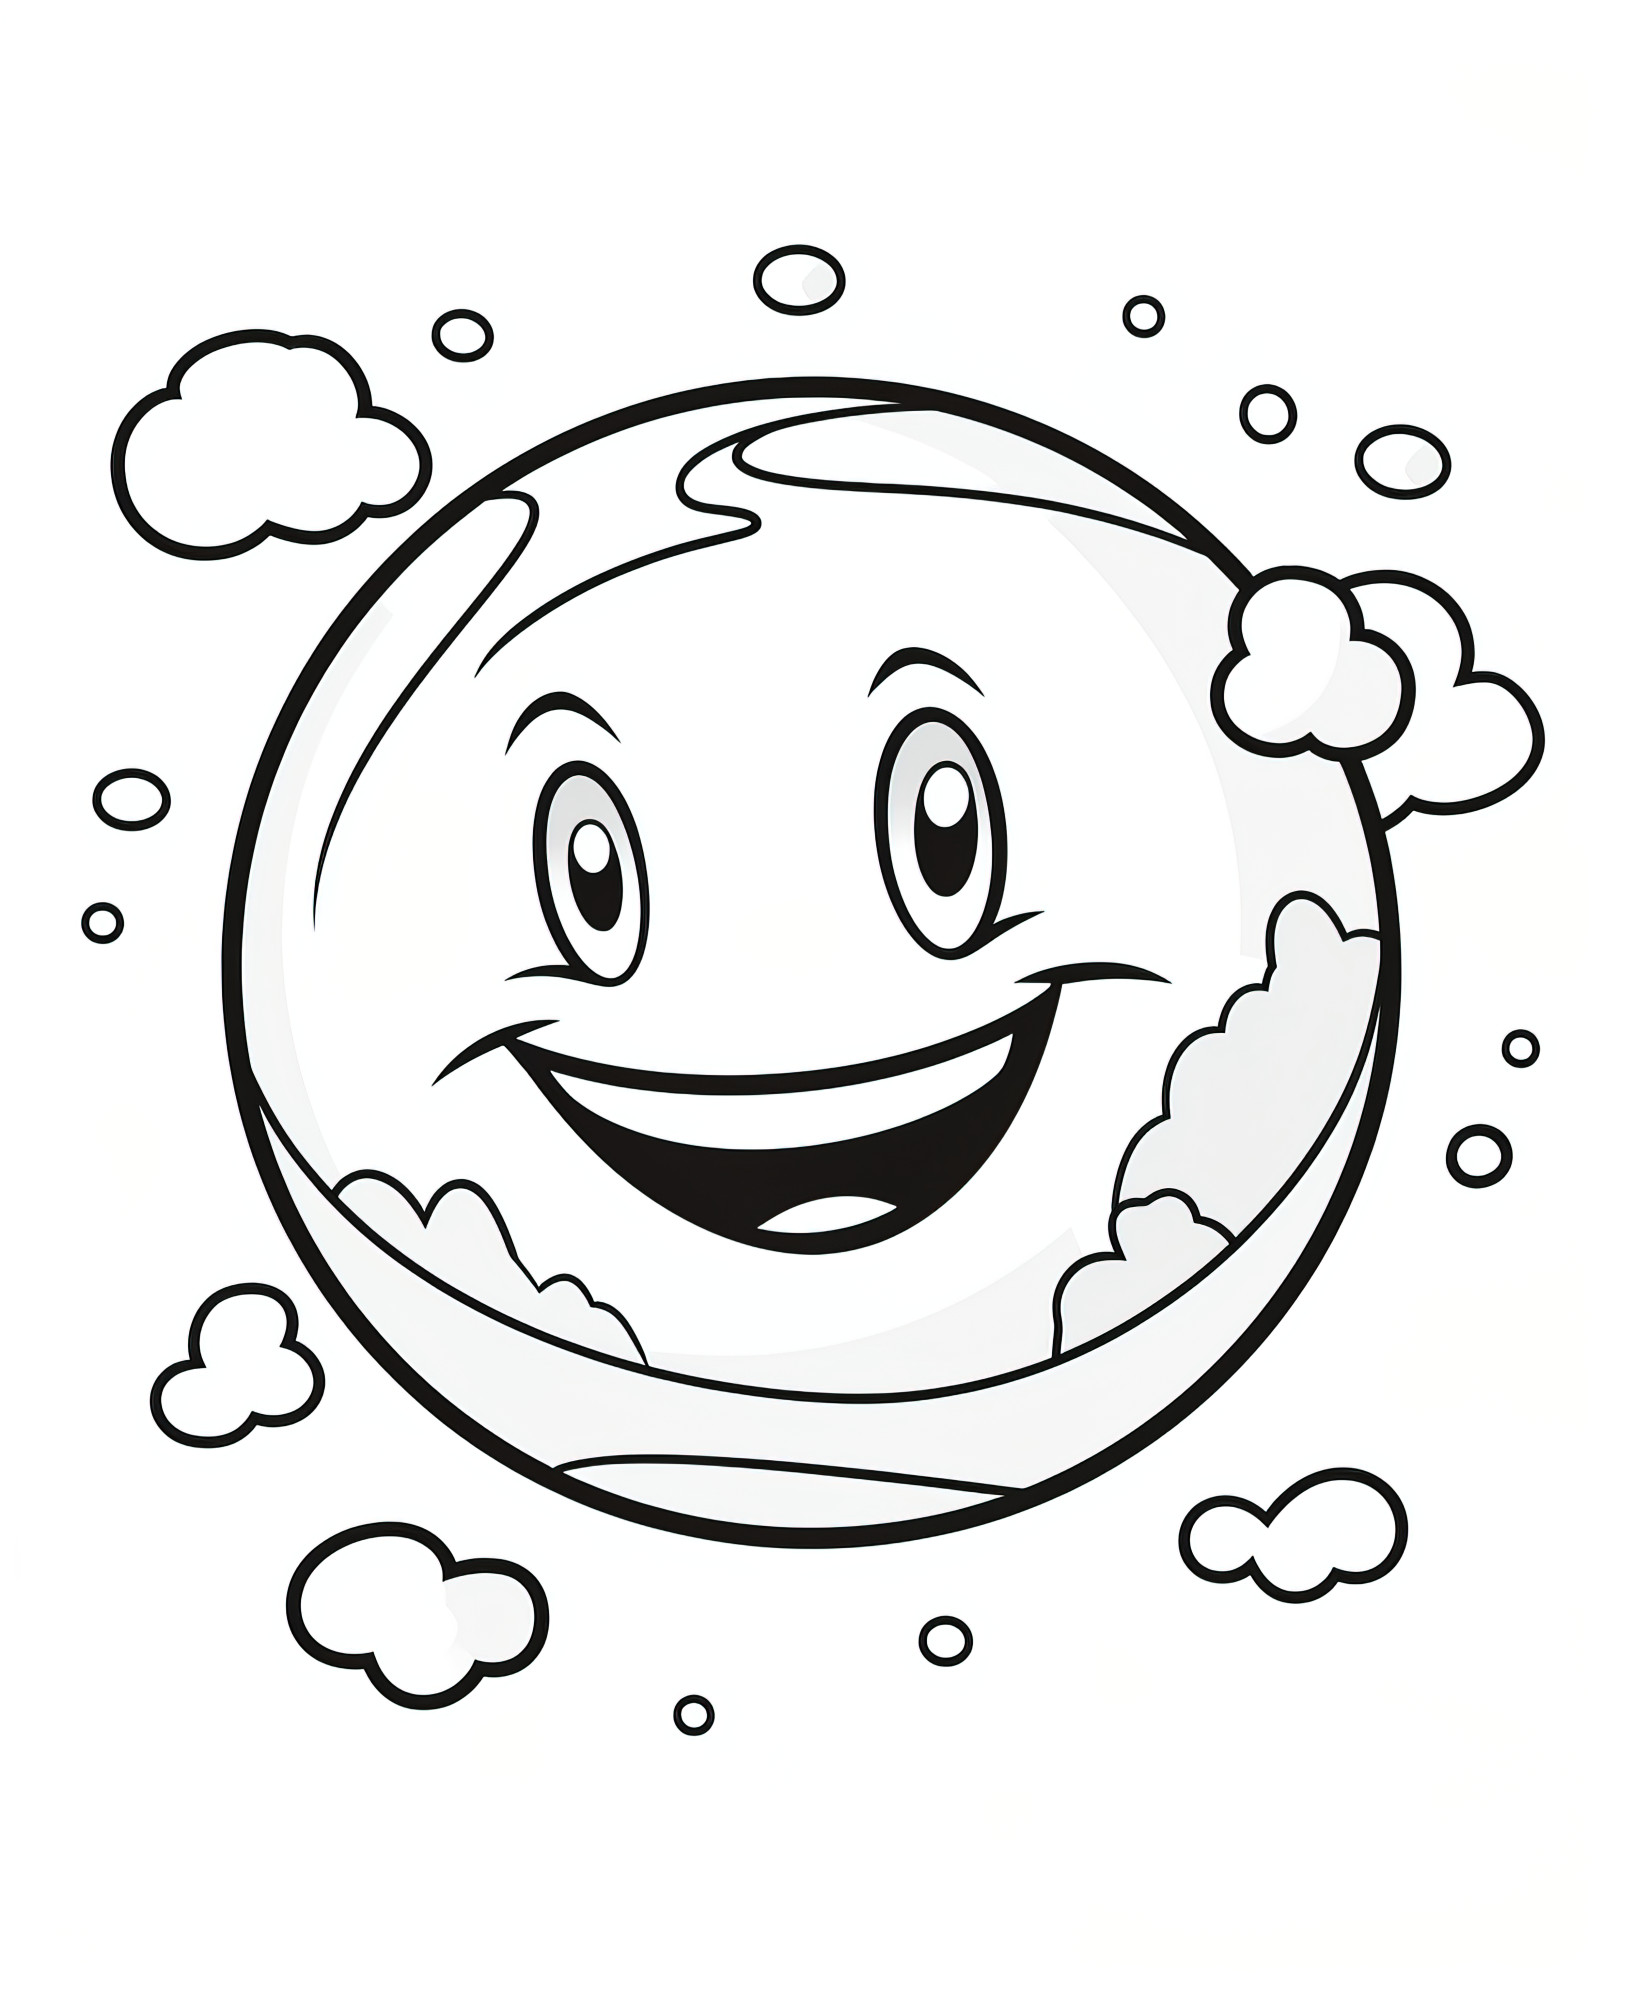 Раскраска для детей: веселая планета смайлик